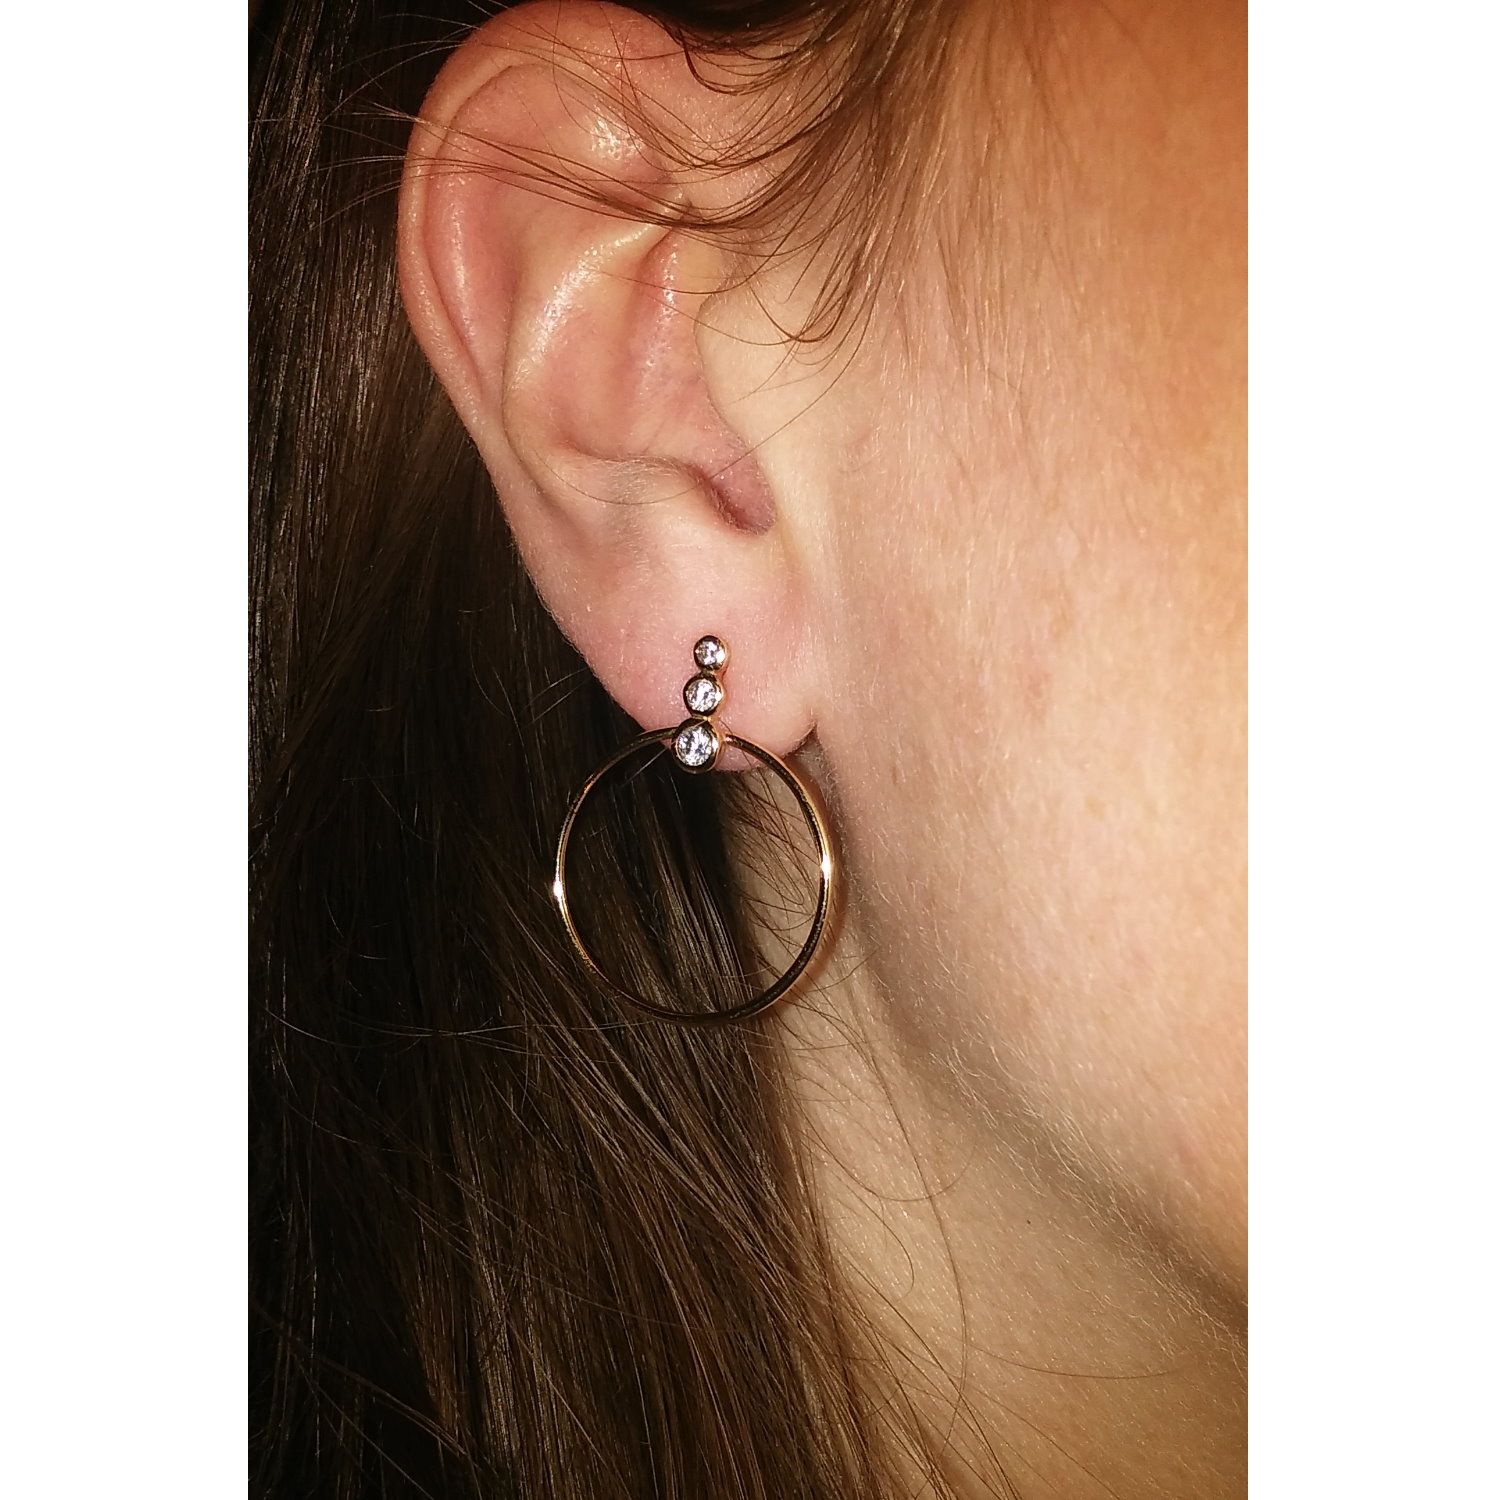 Boucles d'oreilles pendantes en plaqué or 18 carats serties d'oxydes de zirconium. Cercle Pendantes Rond  Adolescent Adulte Femme Fille Indémodable 